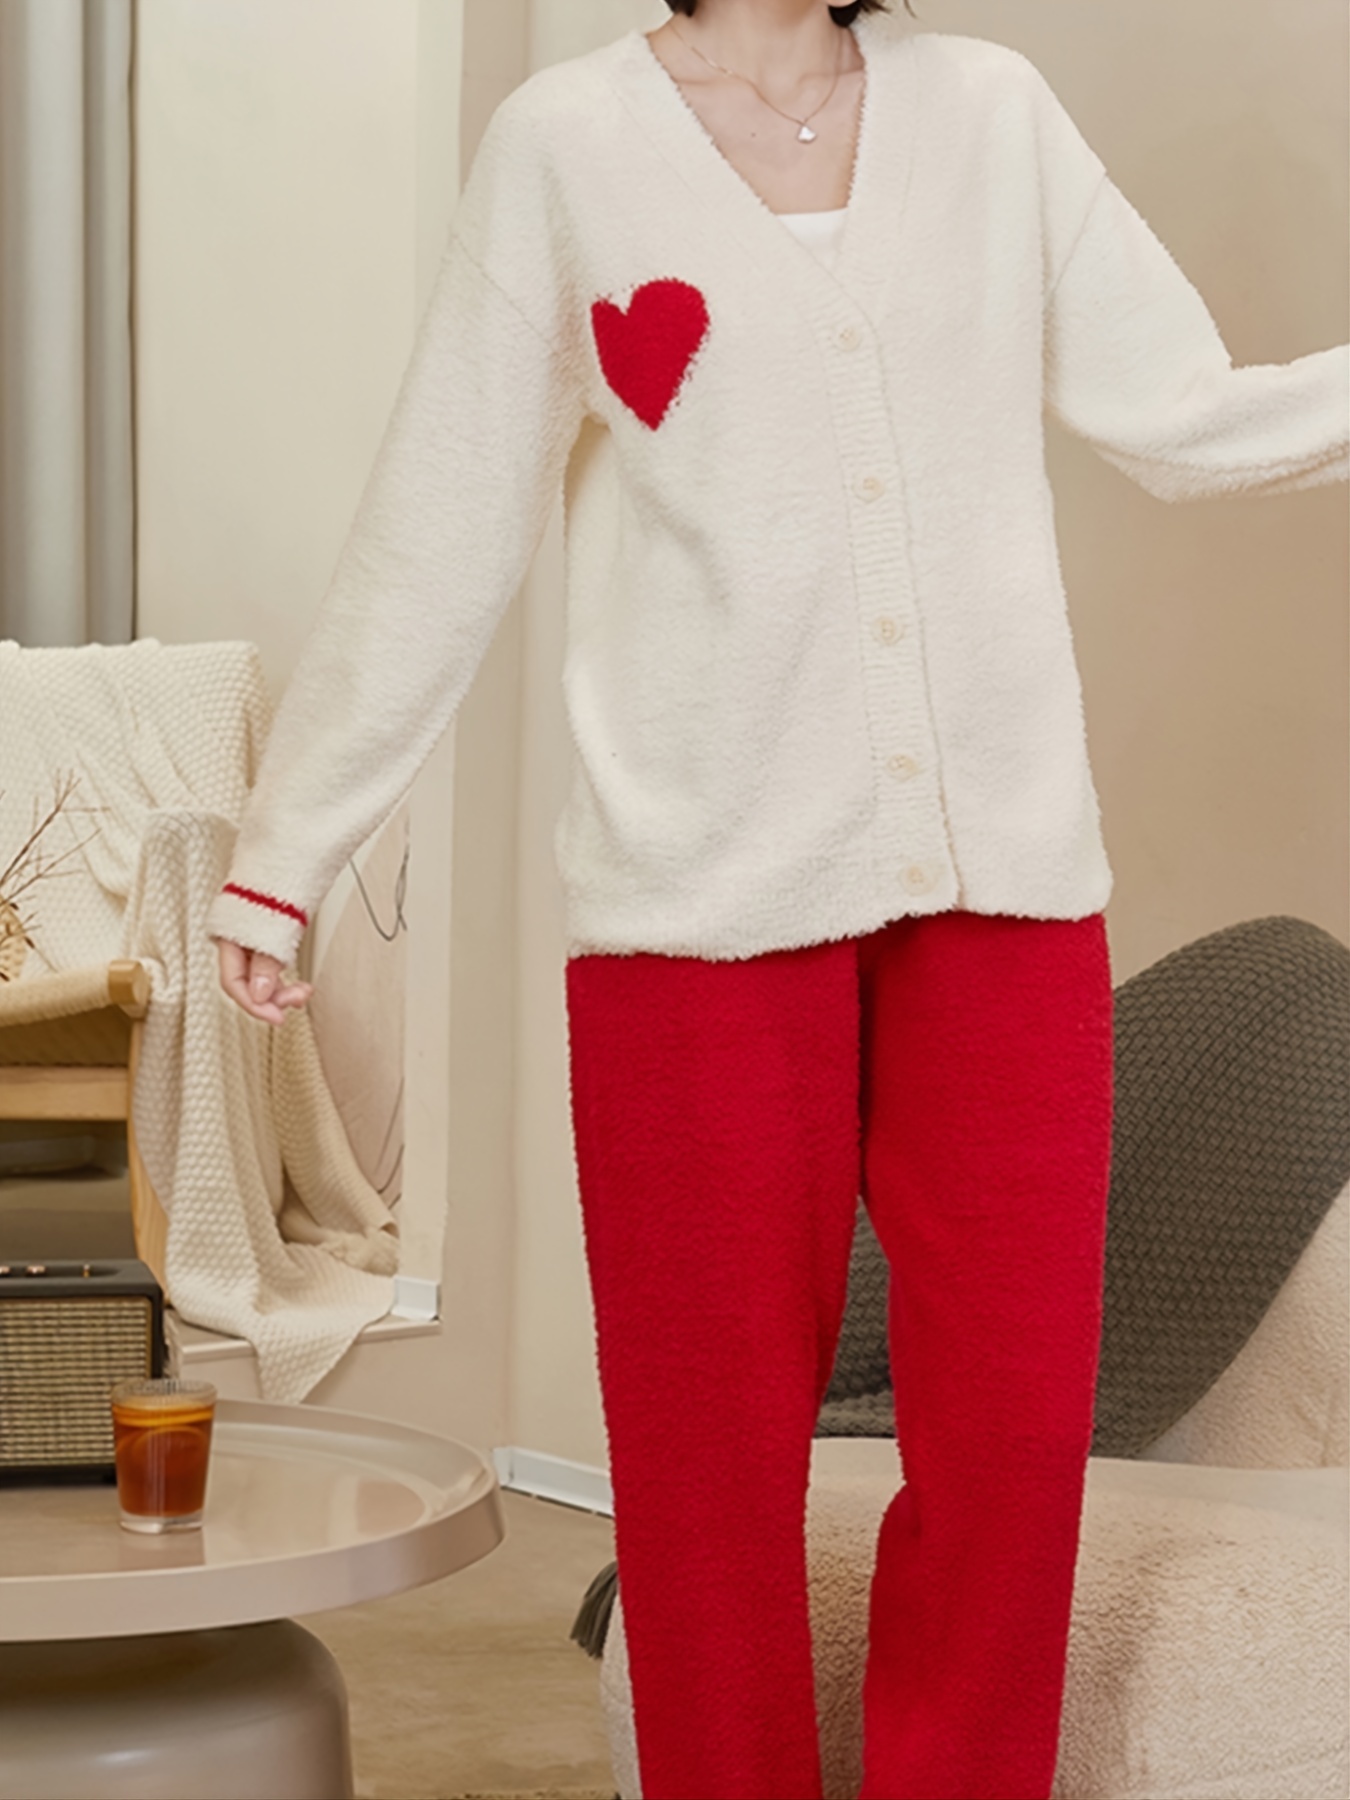 Pijamas de una pieza para niños de 3 a 10 años, trajes de forro polar de  una pieza, suaves y cálidos - AliExpress